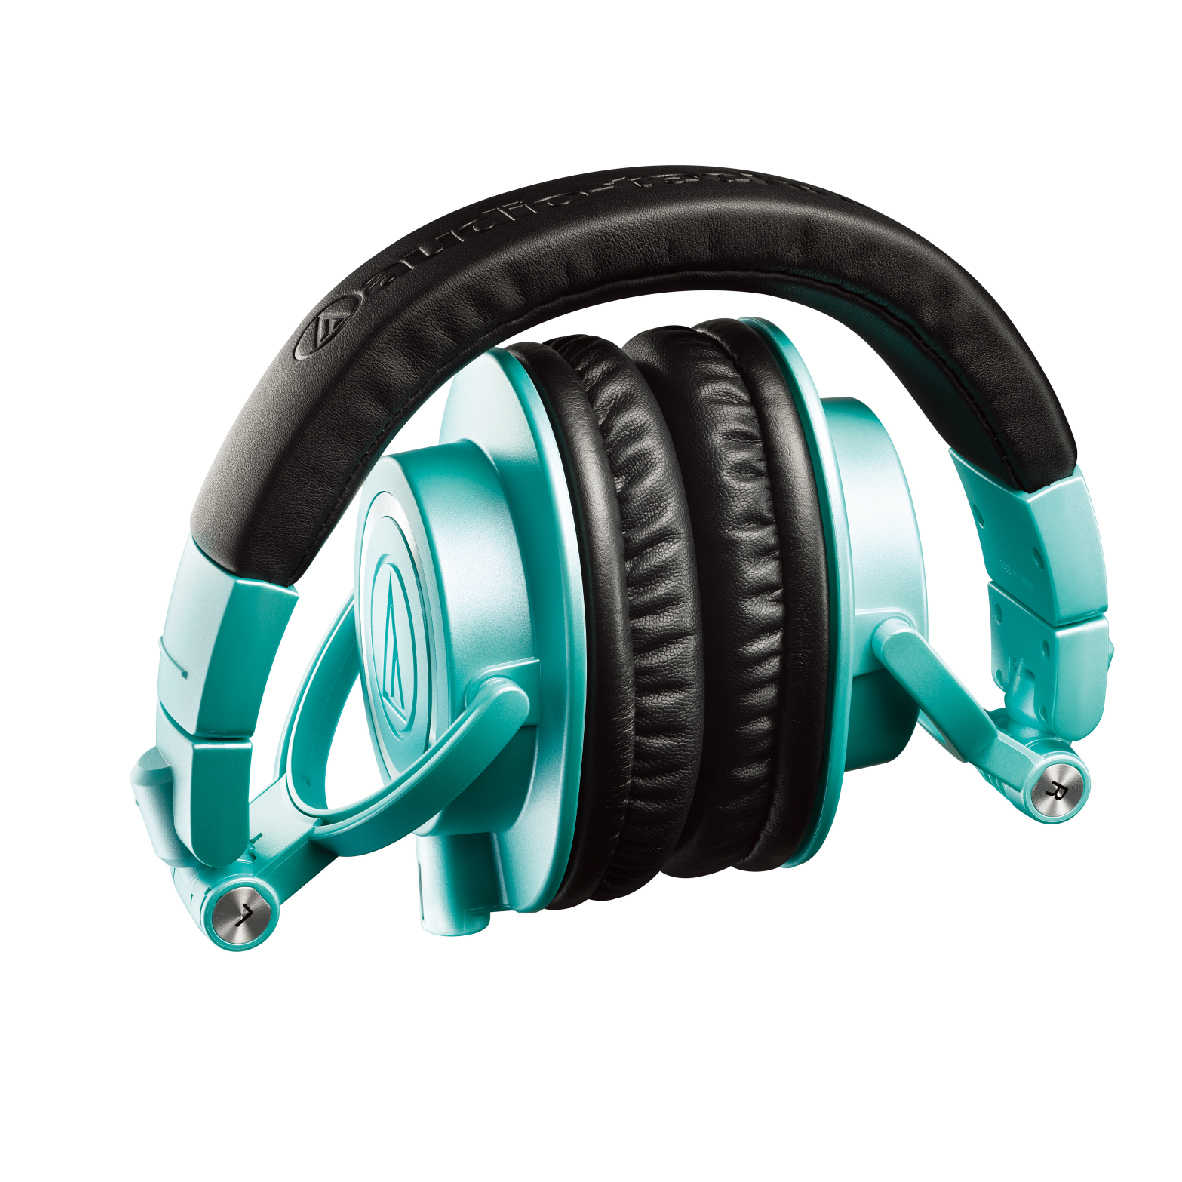 鐵三角 ATH-M50X 專業用 監聽 耳罩式 耳機 冰藍色 IB  | My Ear 耳機專門店